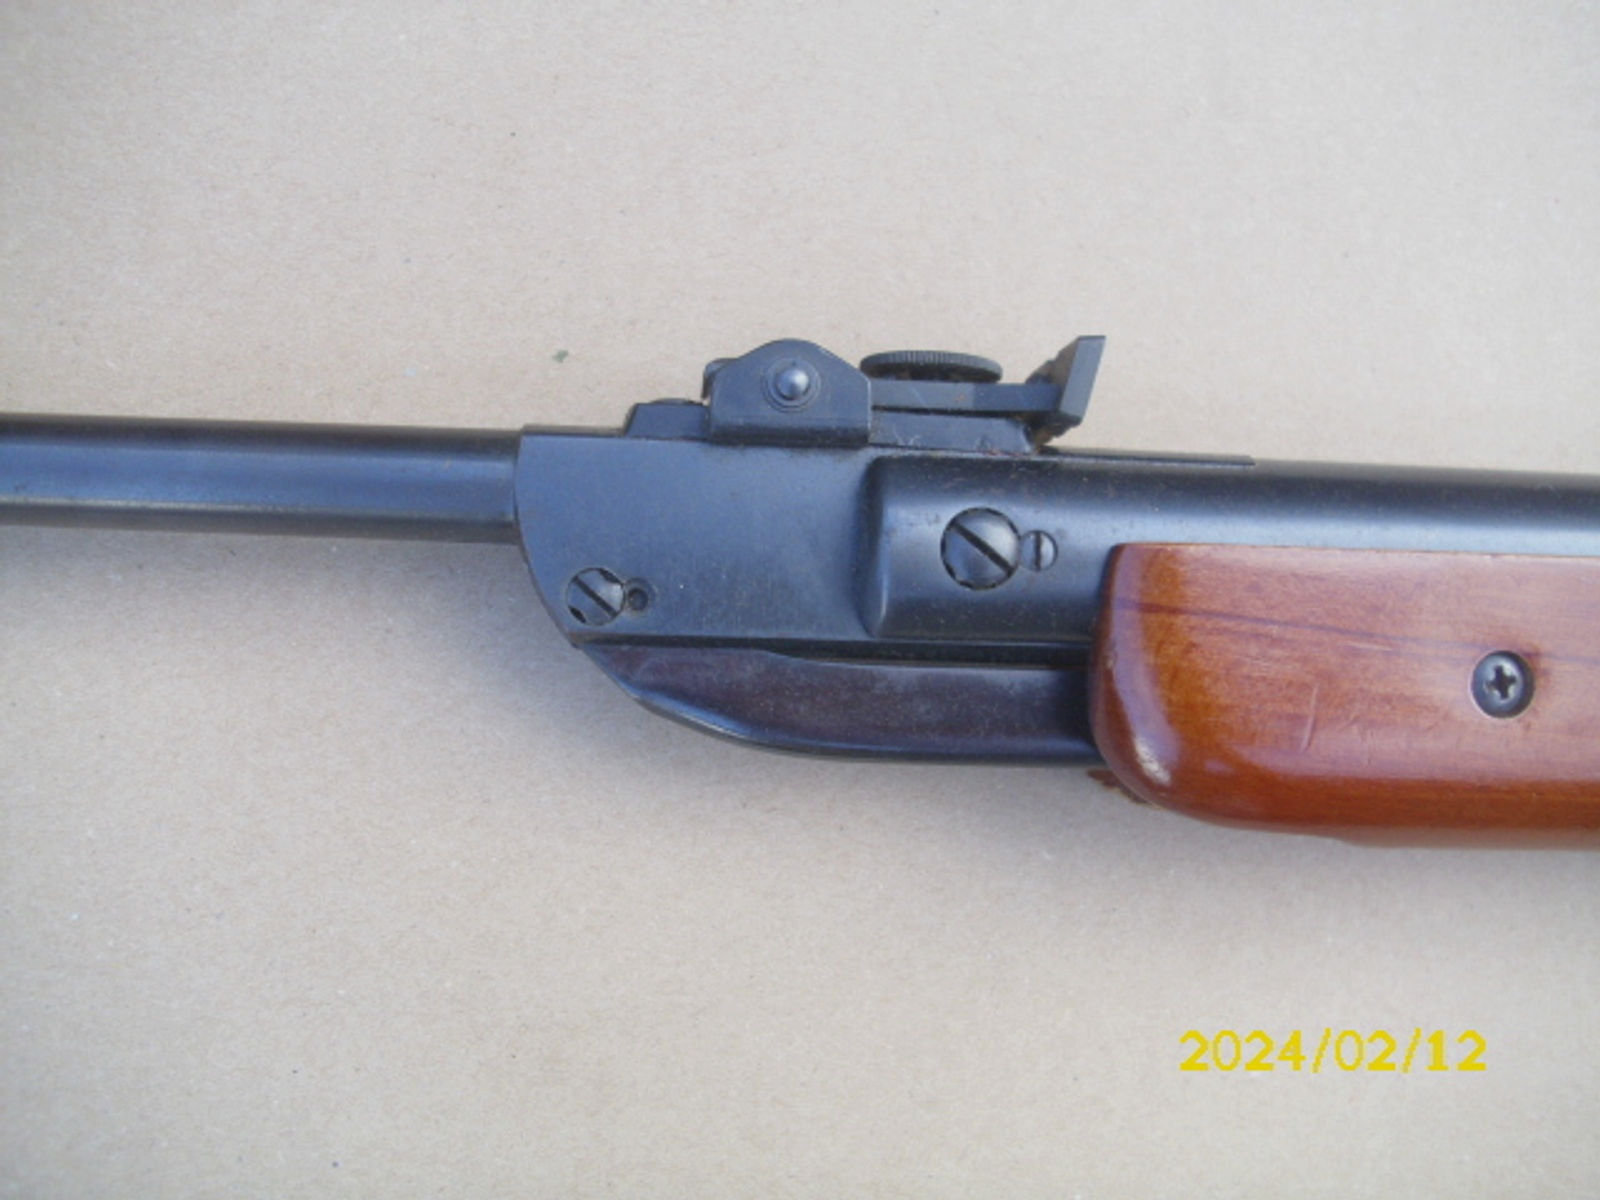 Achtung Sammler schönes altes Diana Mod. 27 Luftgewehr ohne F-Zeichen von 04.69 no 98 teile